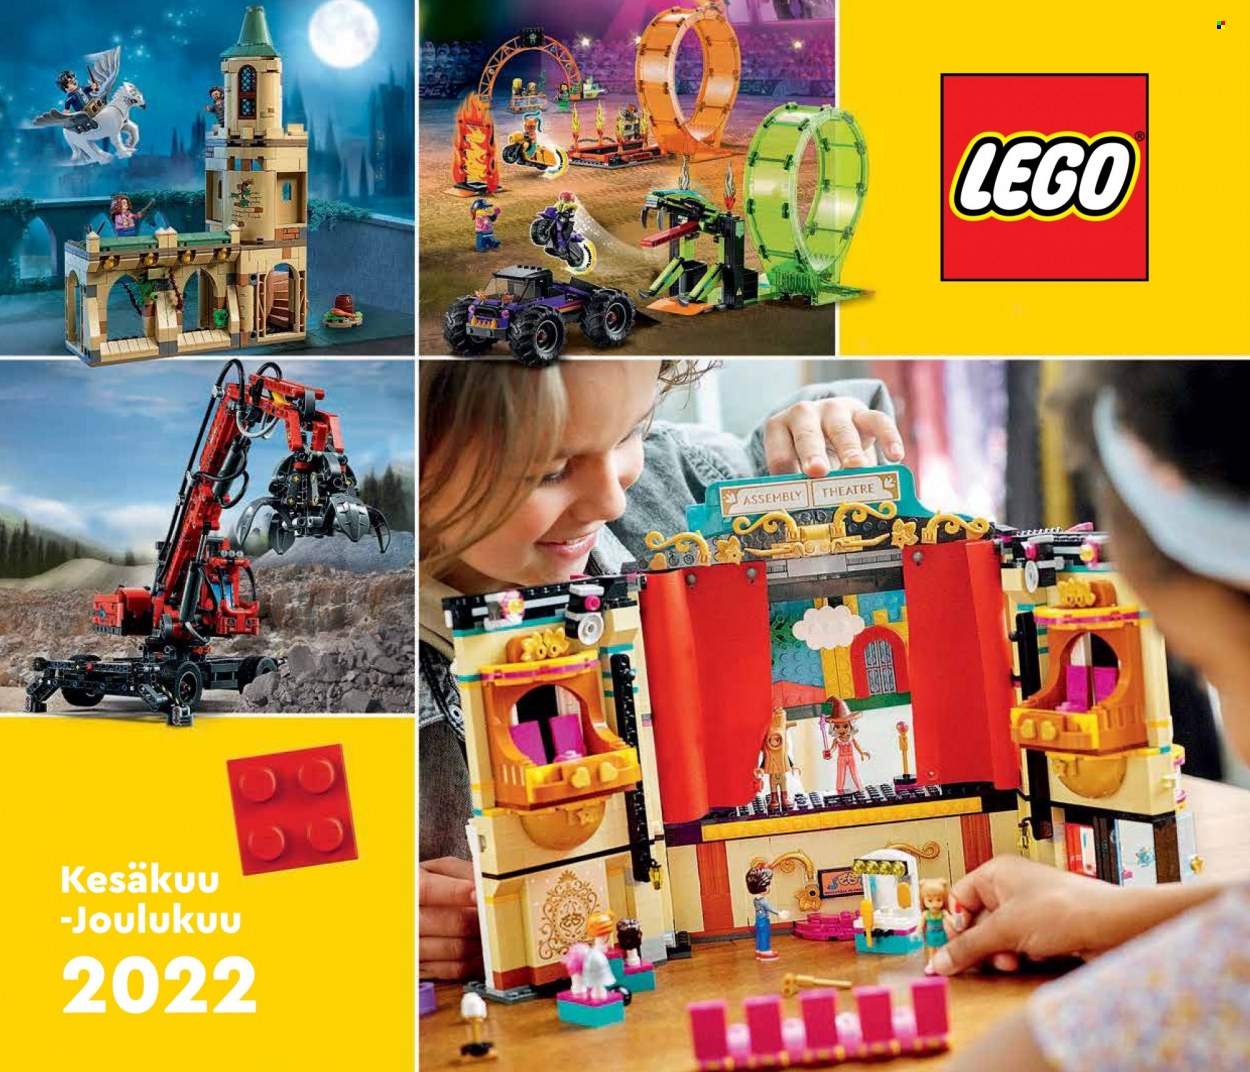 Tokmanni tarjoukset  - 12.08.2022 - 31.12.2022 - Tarjoustuotteet - LEGO. Sivu 1.